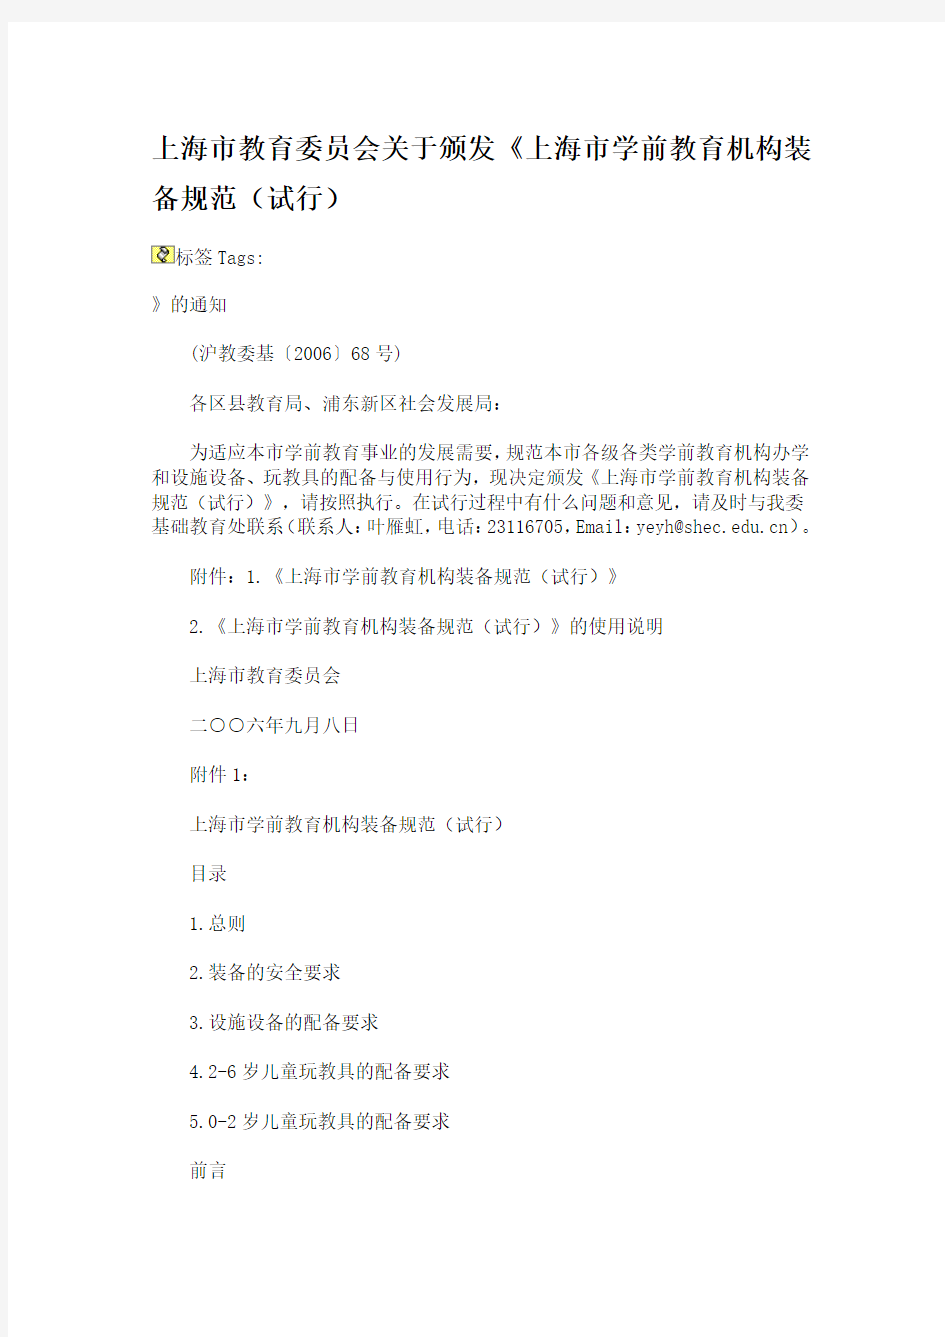 上海市教育委员会关于颁发《上海市学前教育机构装备规范(试行)